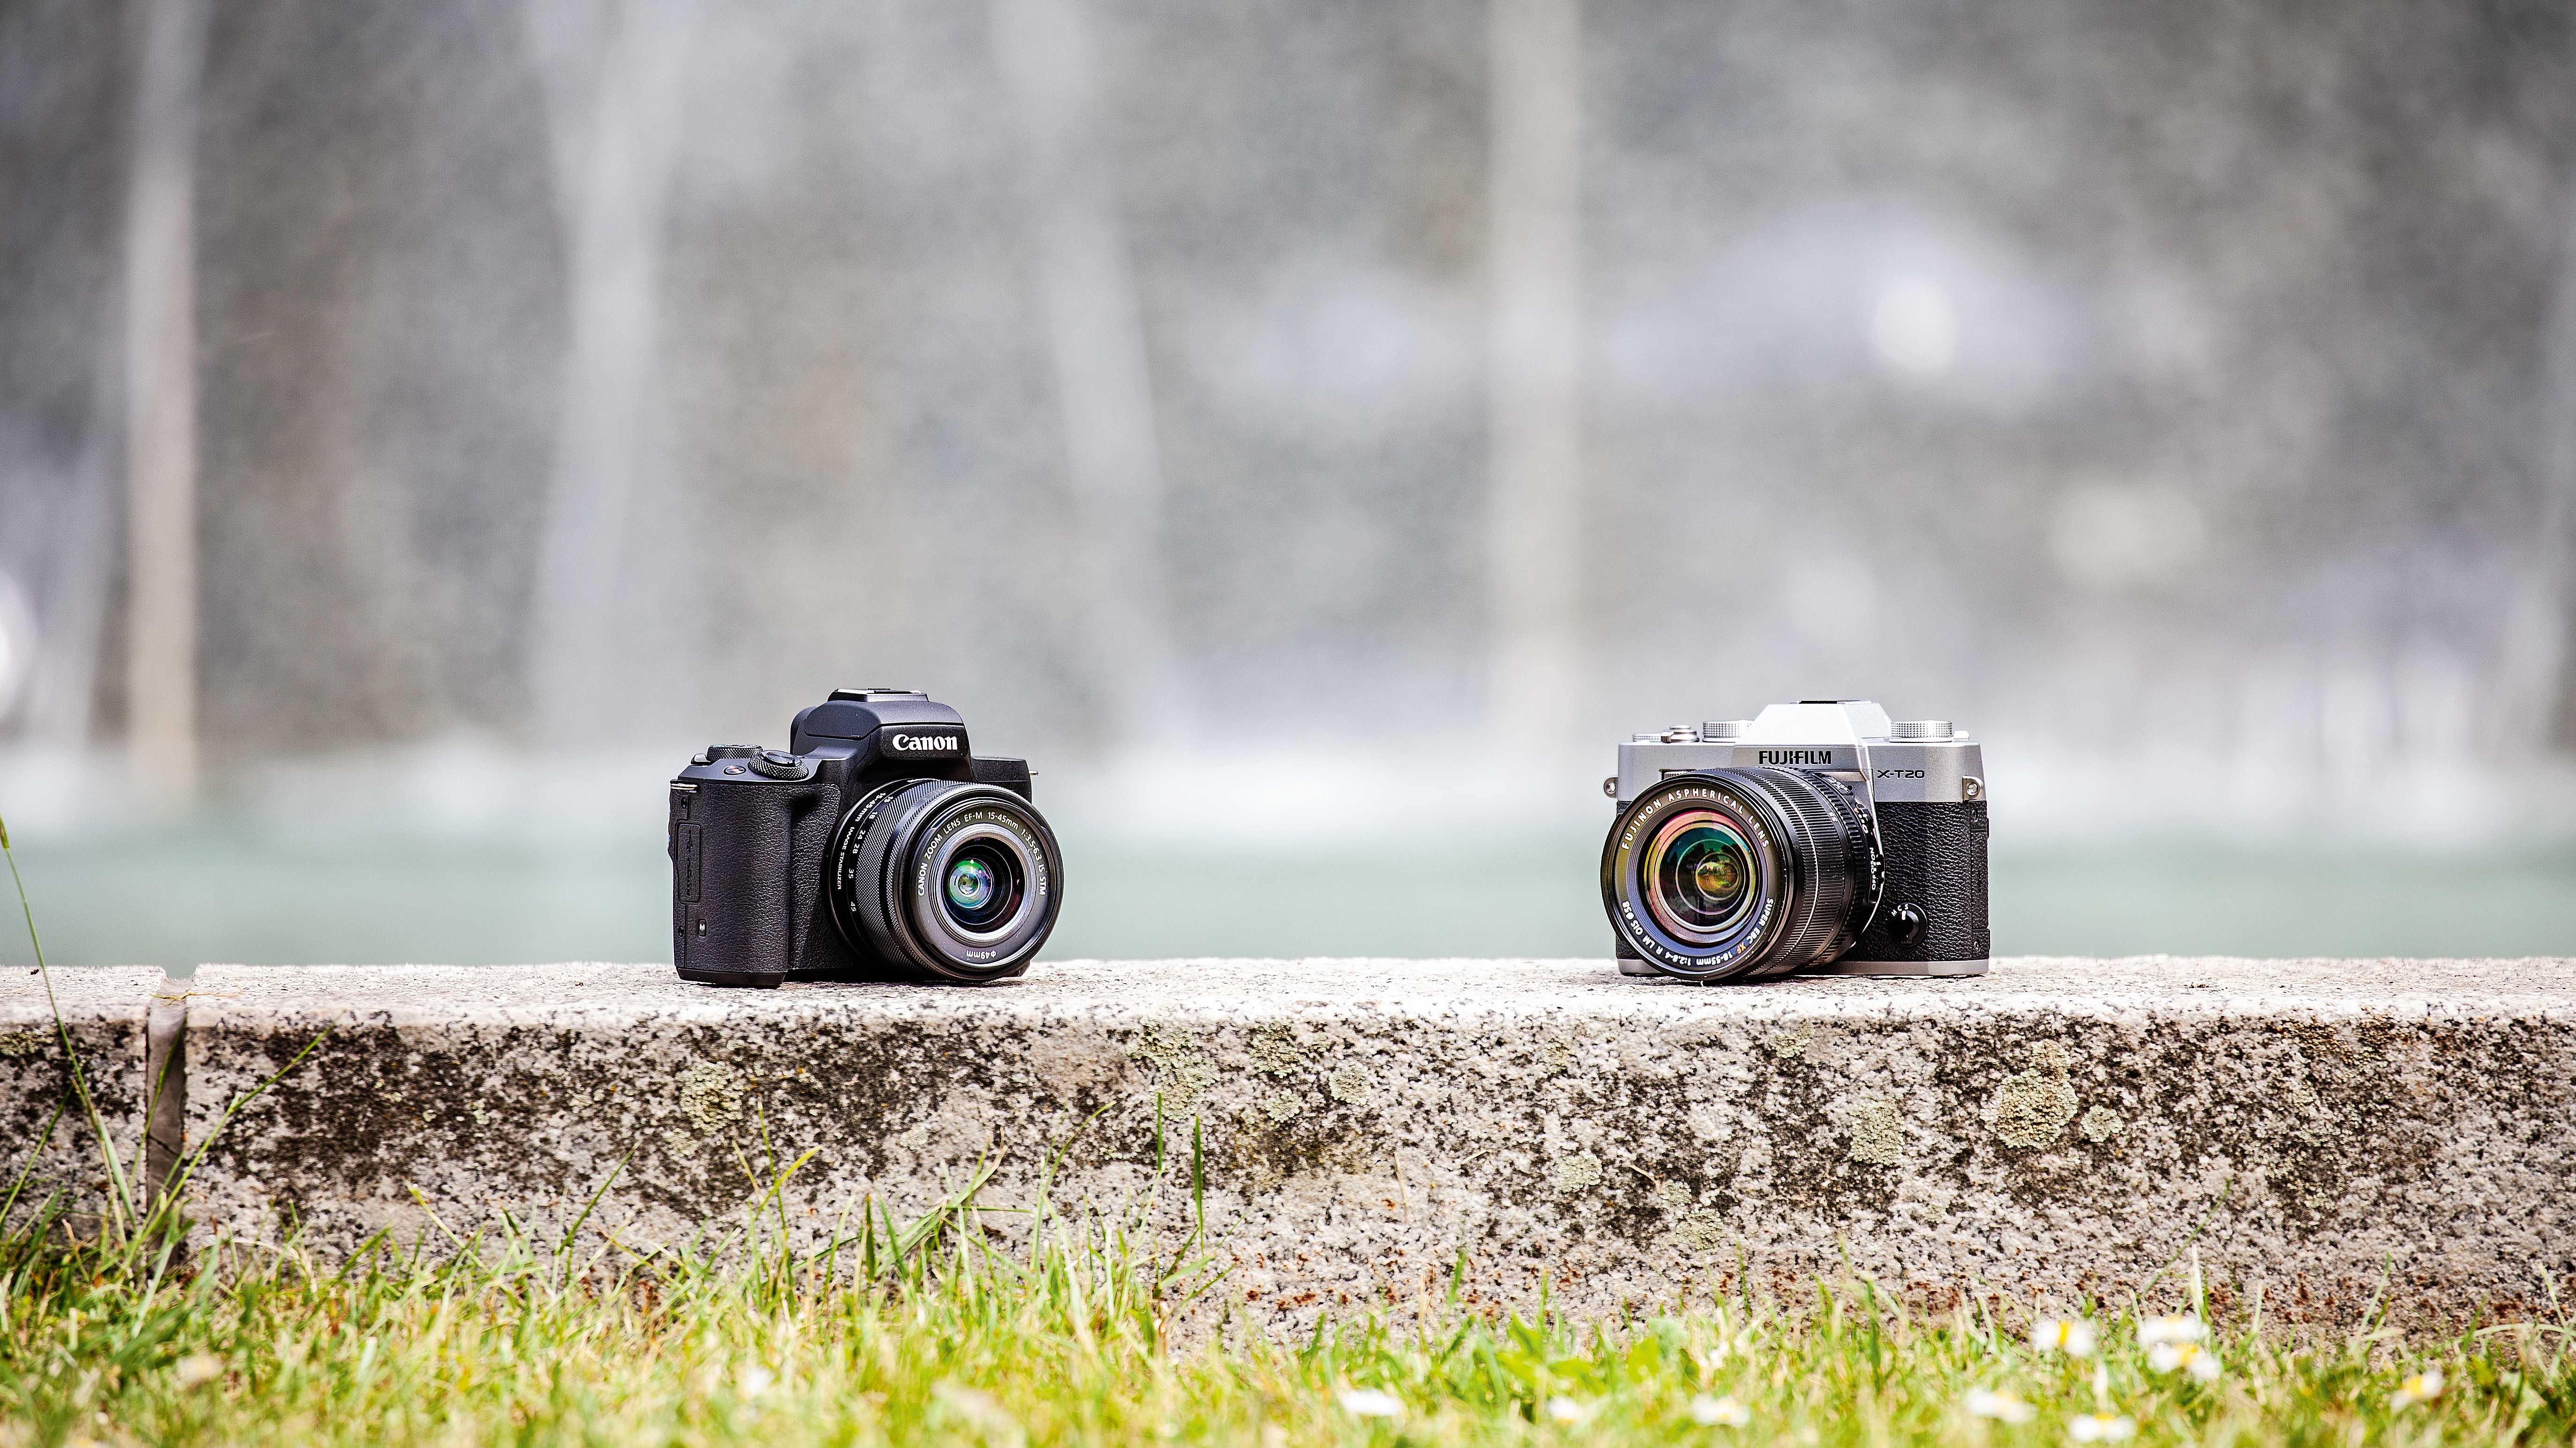 Spiegellose für Ein- und Aufsteiger: Canon EOS M50 gegen Fujifilm X-T20